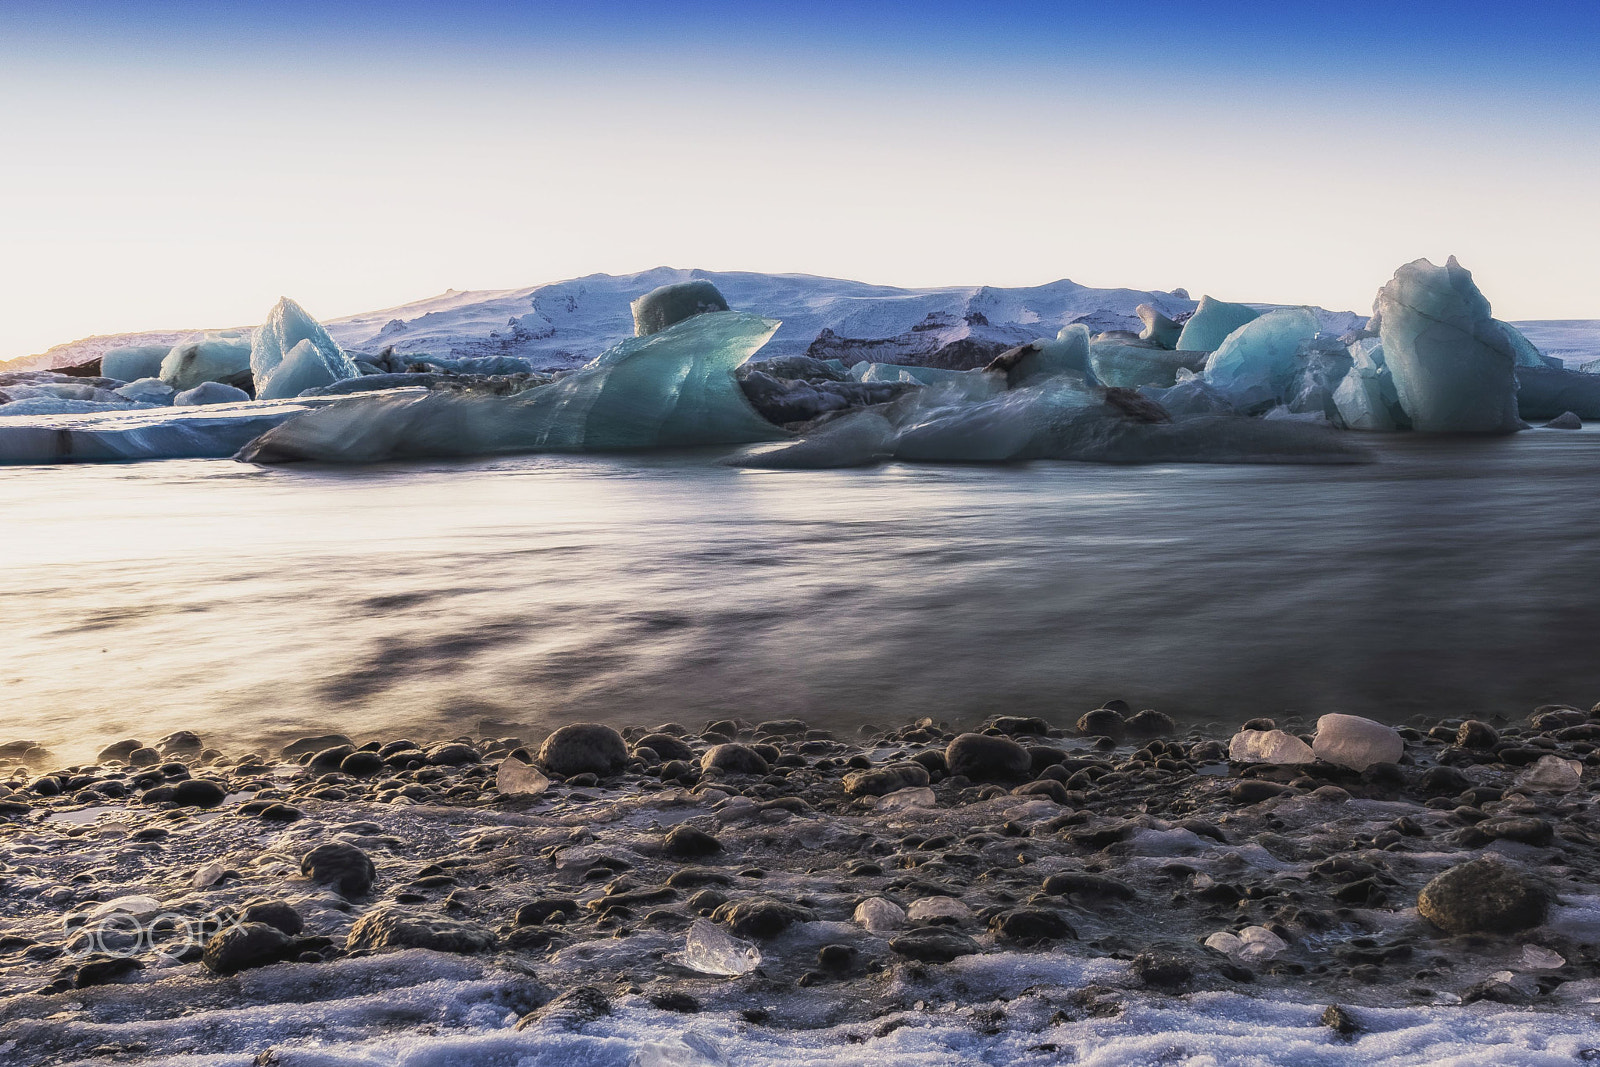 Sony a6000 + ZEISS Touit 12mm F2.8 sample photo. Glacier lagoon - jökulsárlón photography